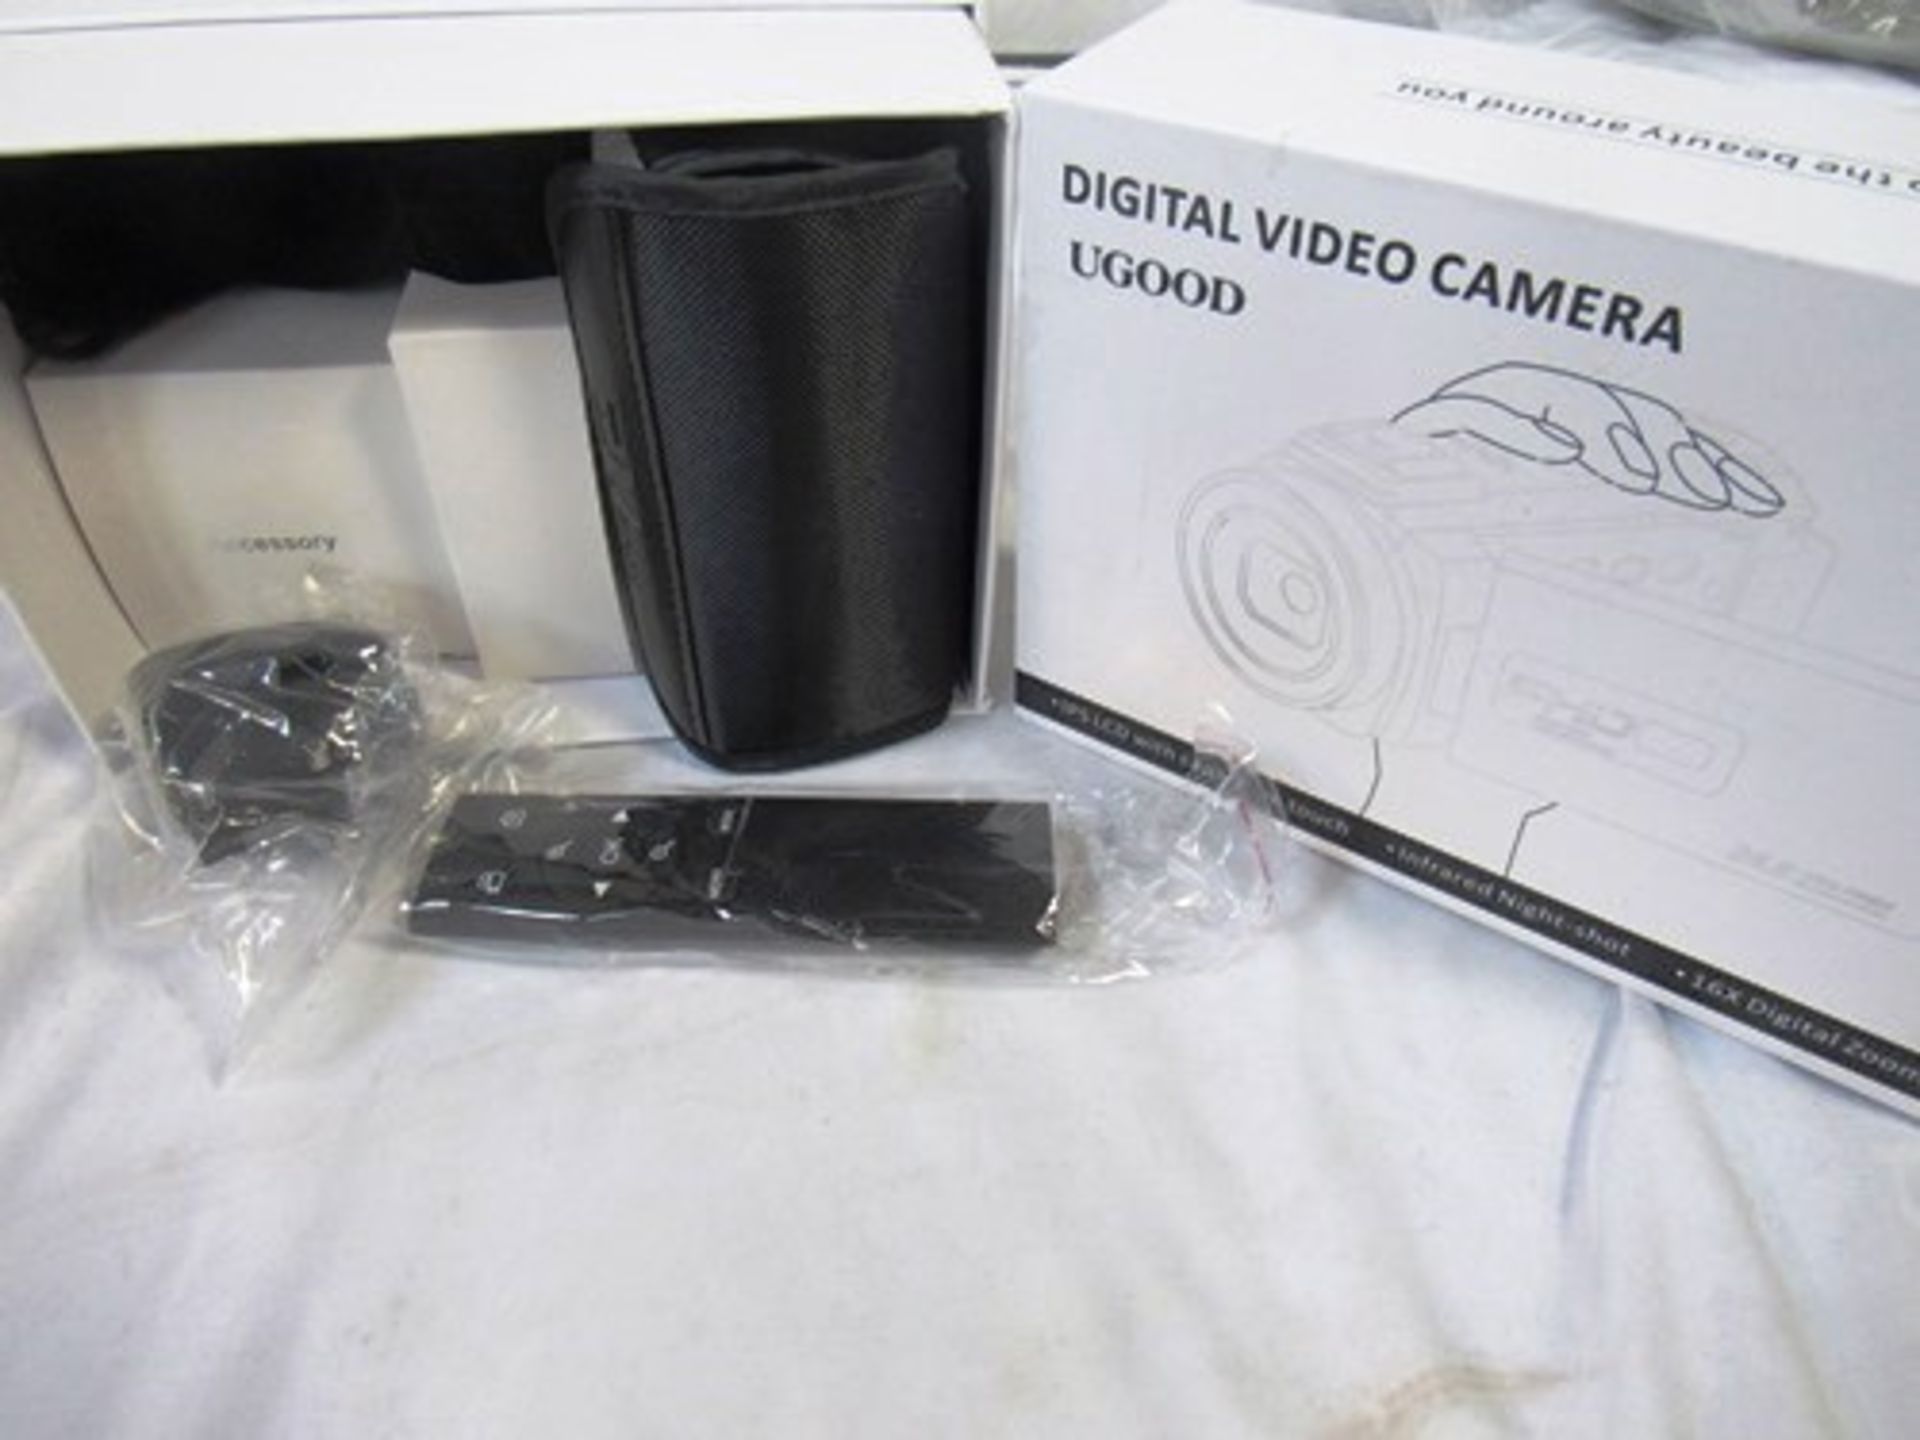 1 x Ugood digital video camera, Full HD 1920 x 1080 with accessories, 16 x digital zoom - New in box